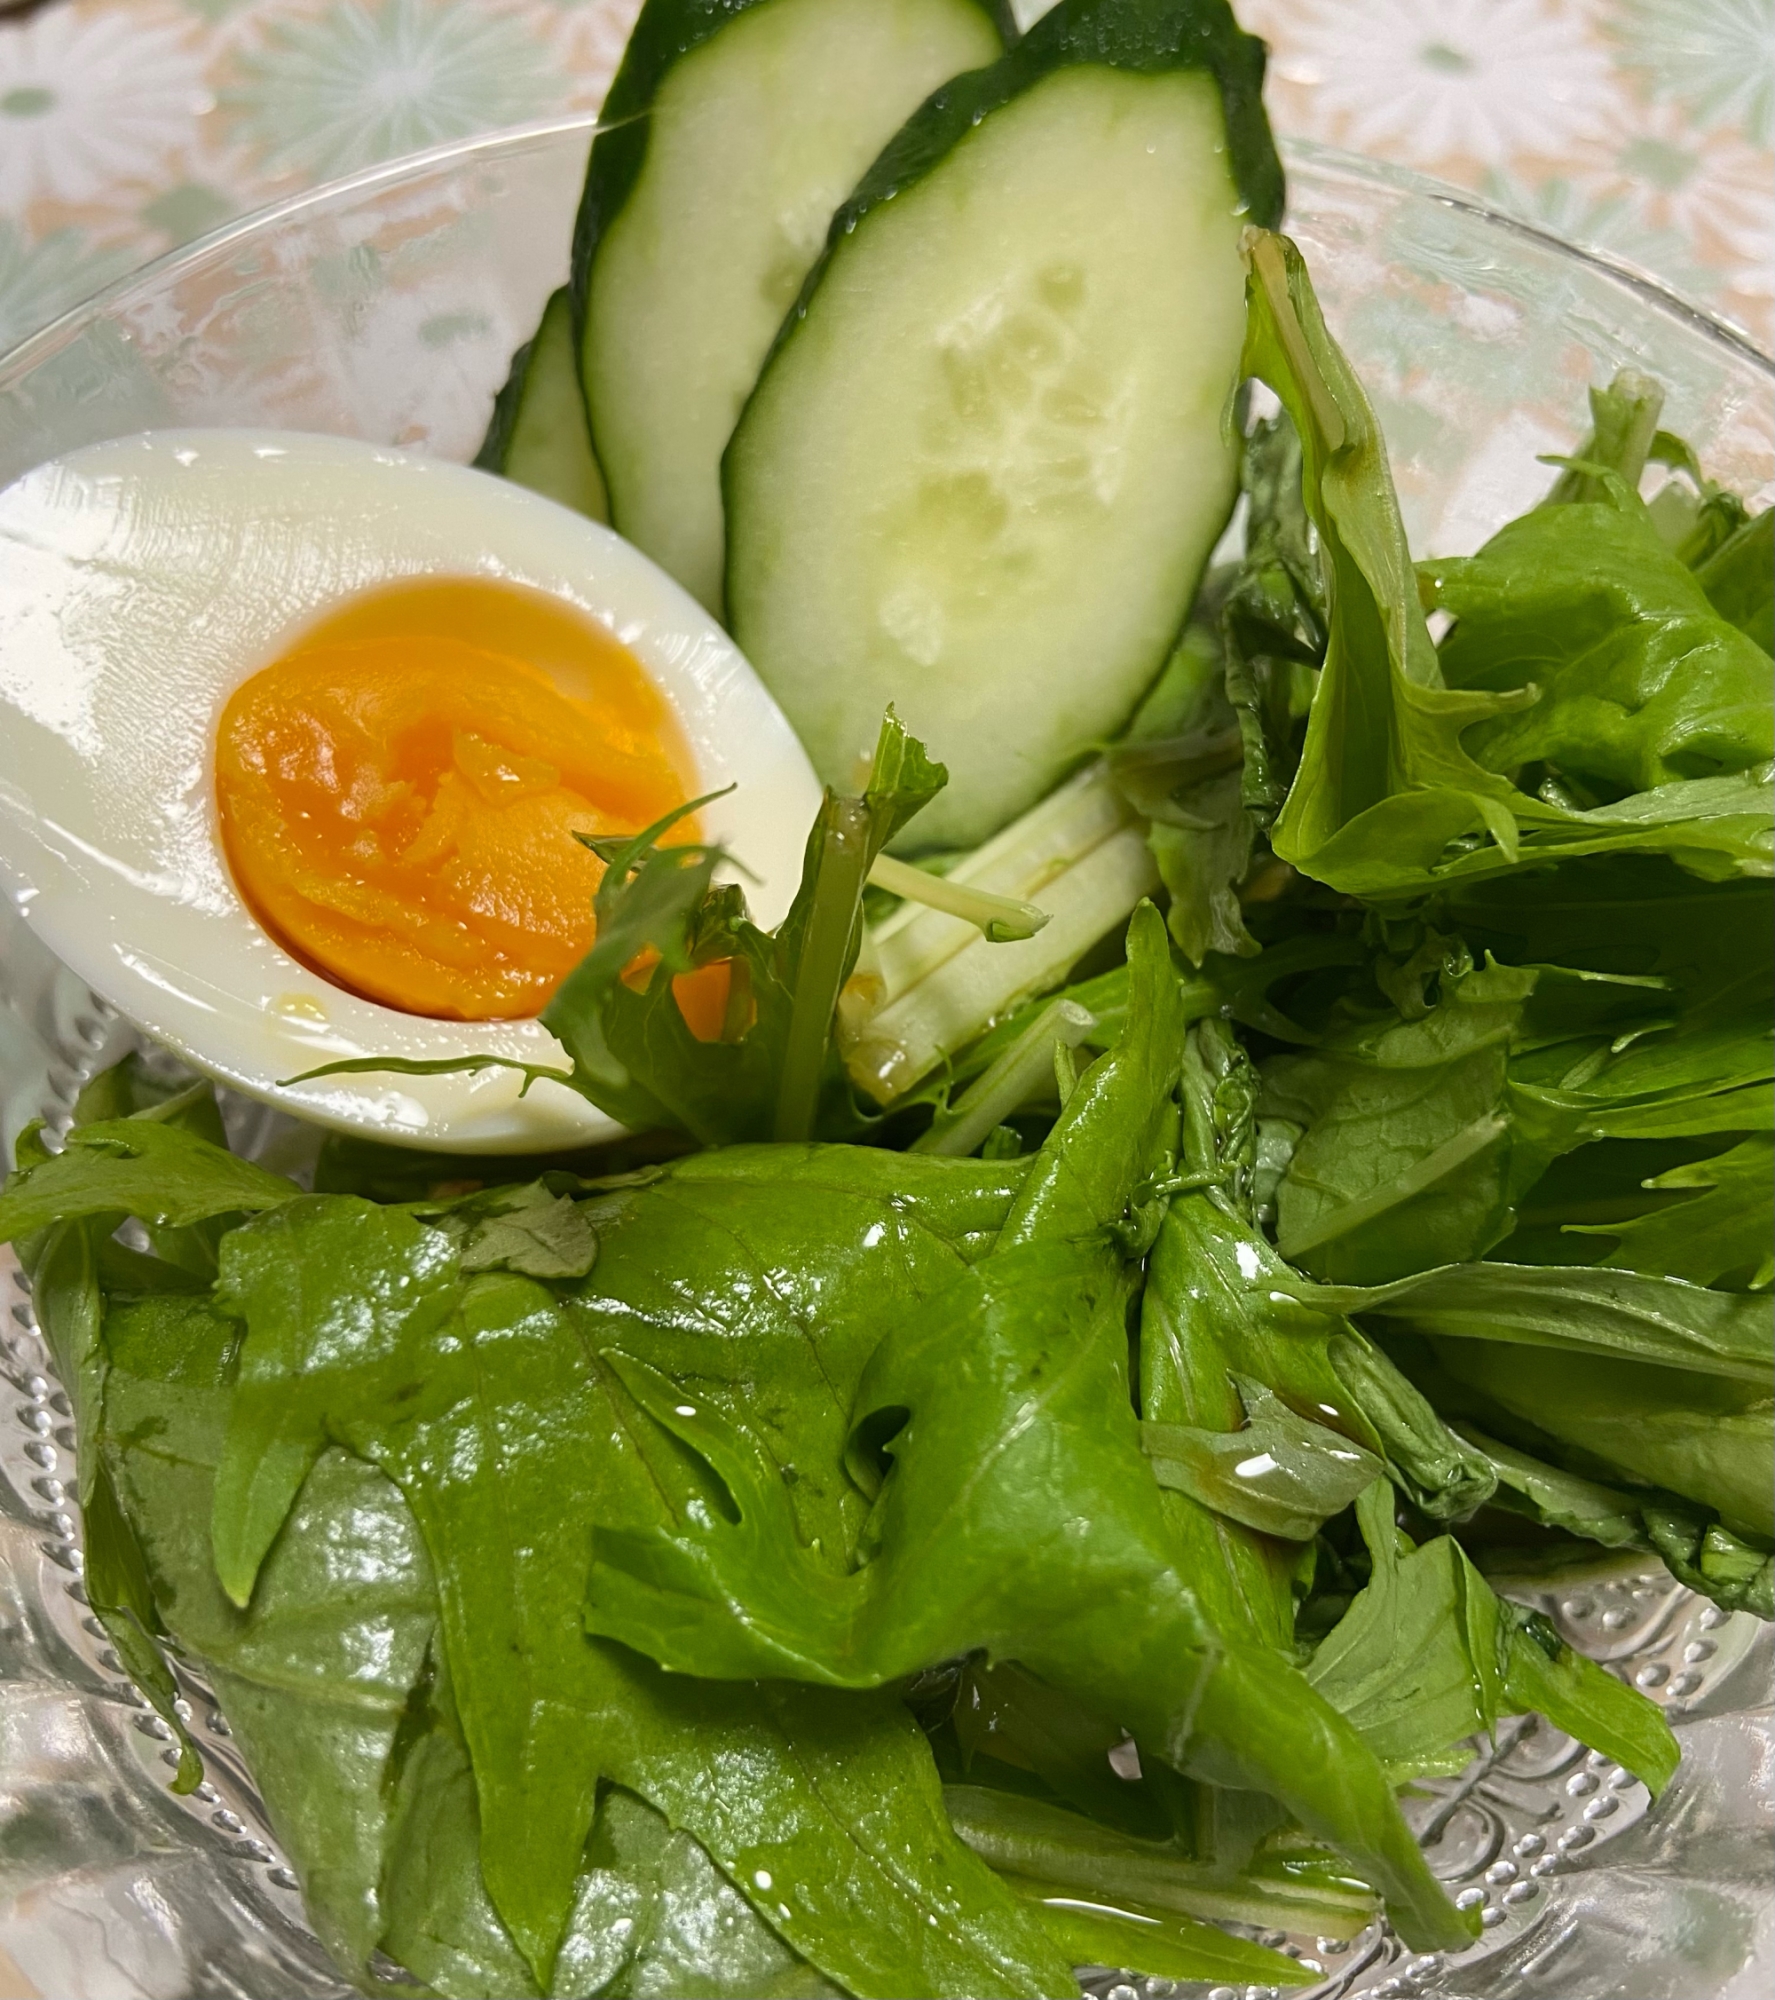 水菜ときゅうりのサラダ